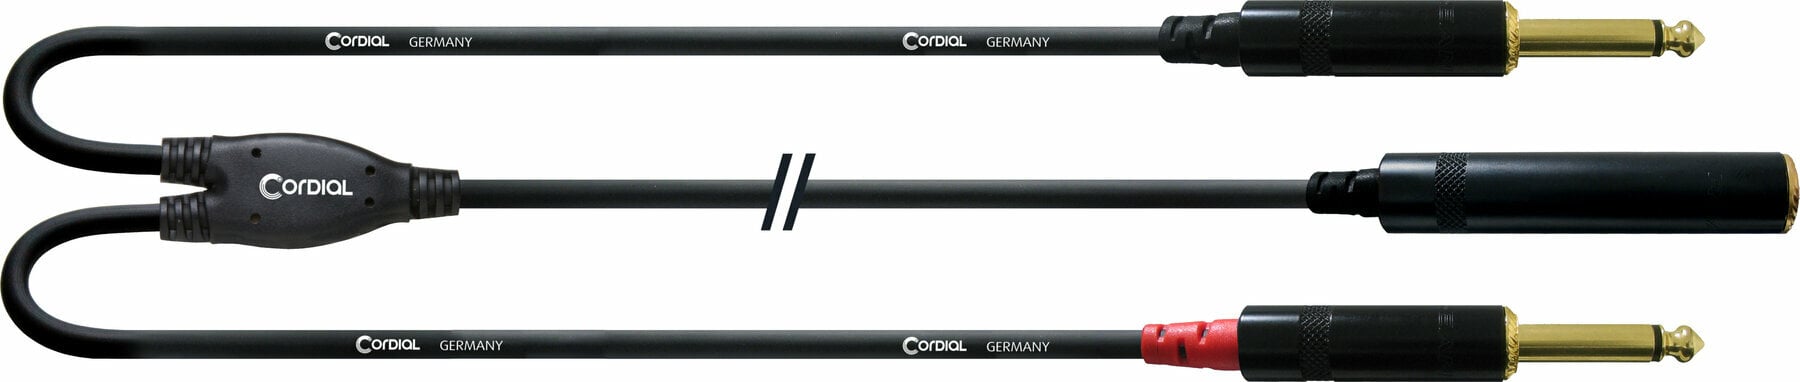 Audio kabel Cordial CFY 0,3 KPP 30 cm Audio kabel